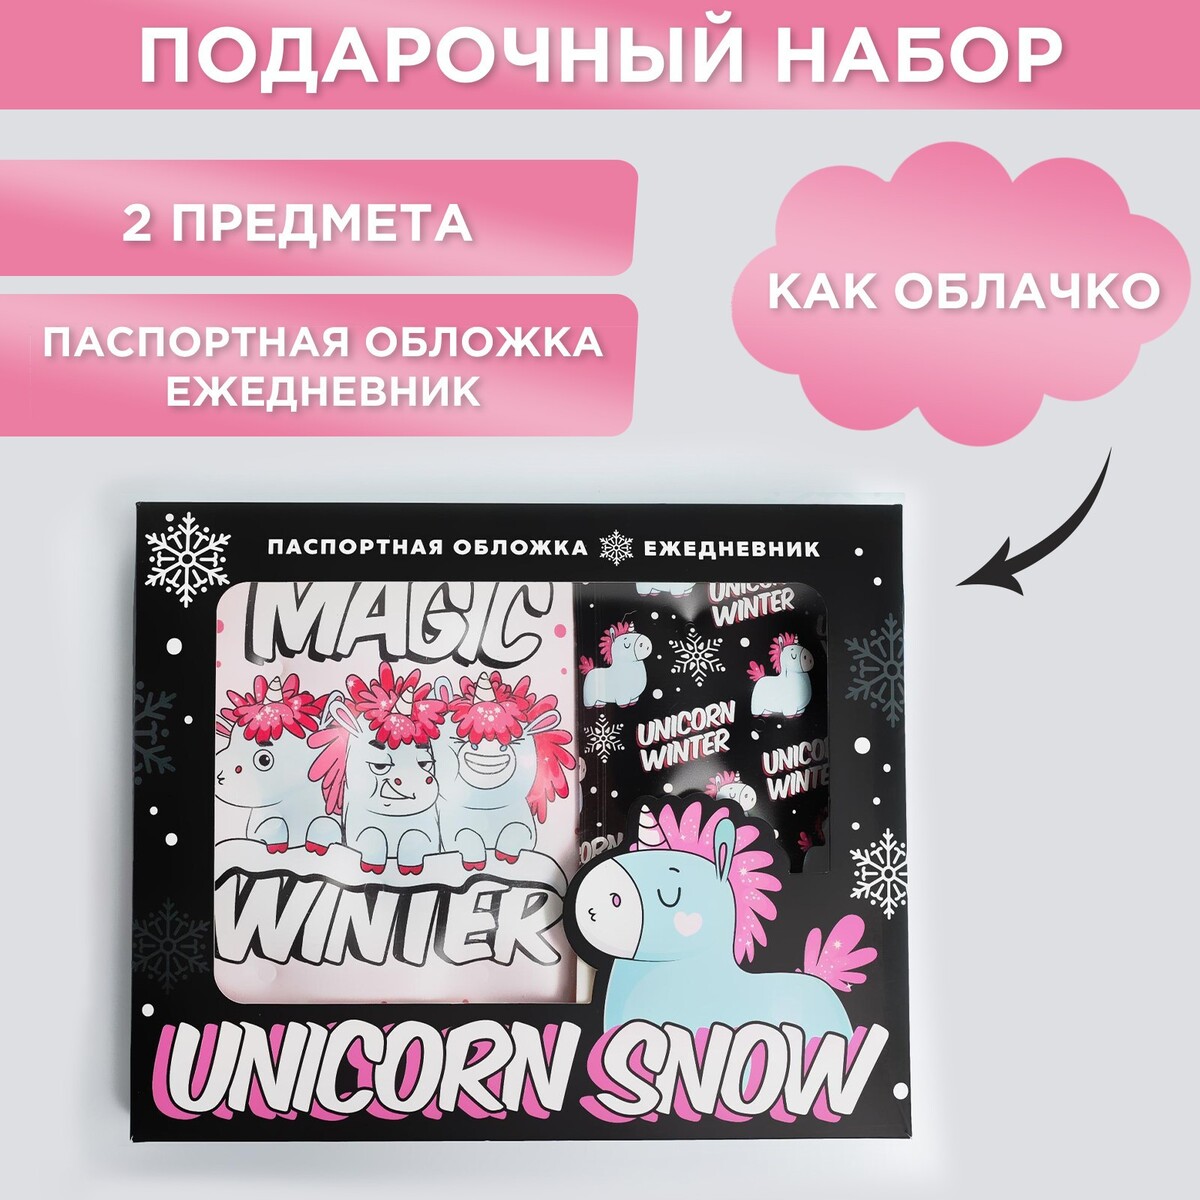 Набор unicorn snow: паспортная обложка-облачко и ежедневник-облачко набор коньки детские раздвижные snow cat с роликовой платформой защита р 34 37